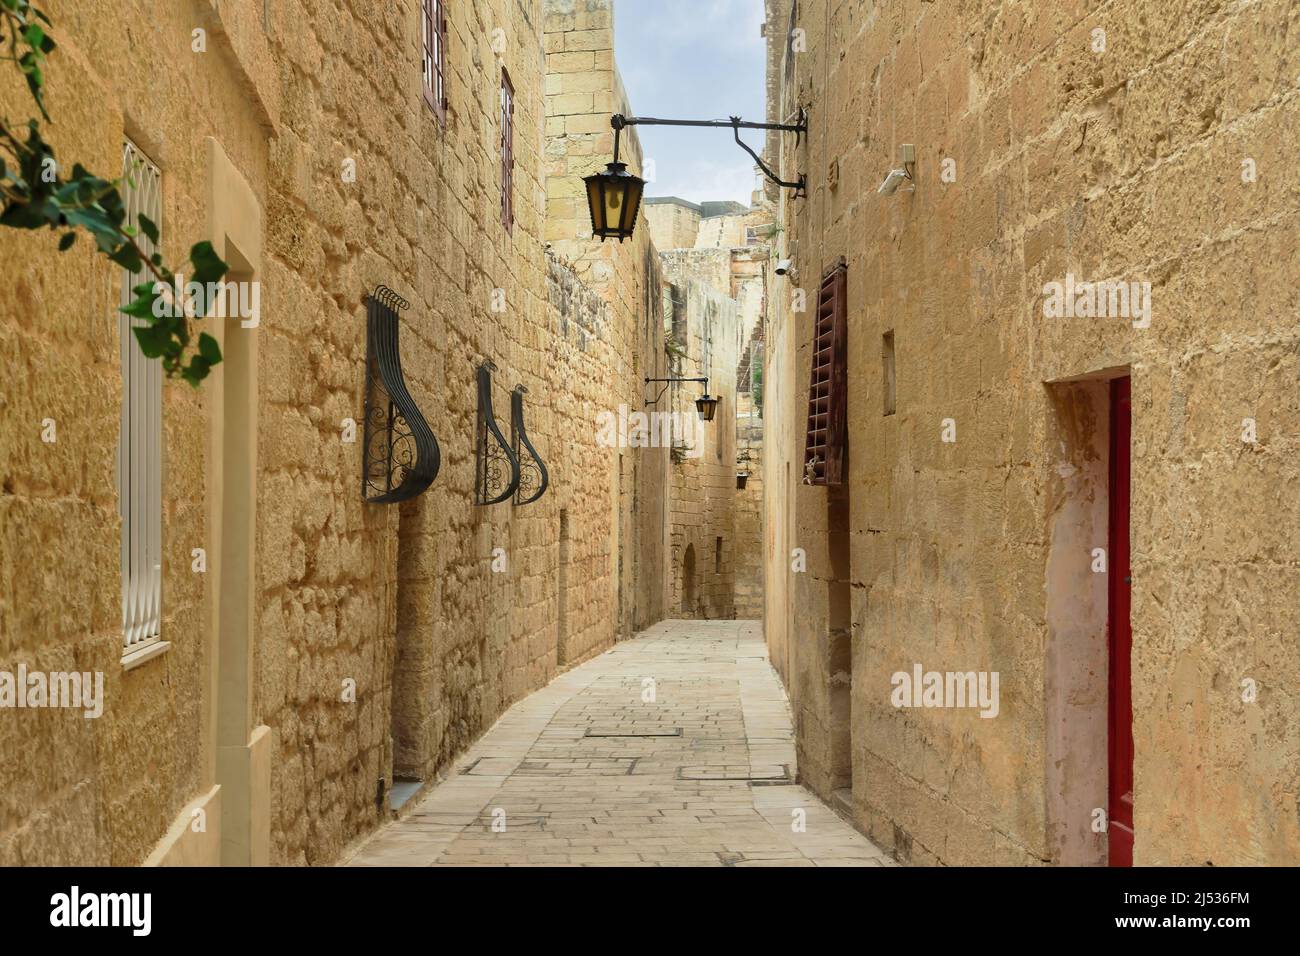 Mdina, Malta Leere Gasse entlang aus Stein gebauten Häusern in mittelalterlichen historischen Stille Stadt gepflastert mit Steinplatten & Kalksteinmauern mit hängenden Laternen. Stockfoto